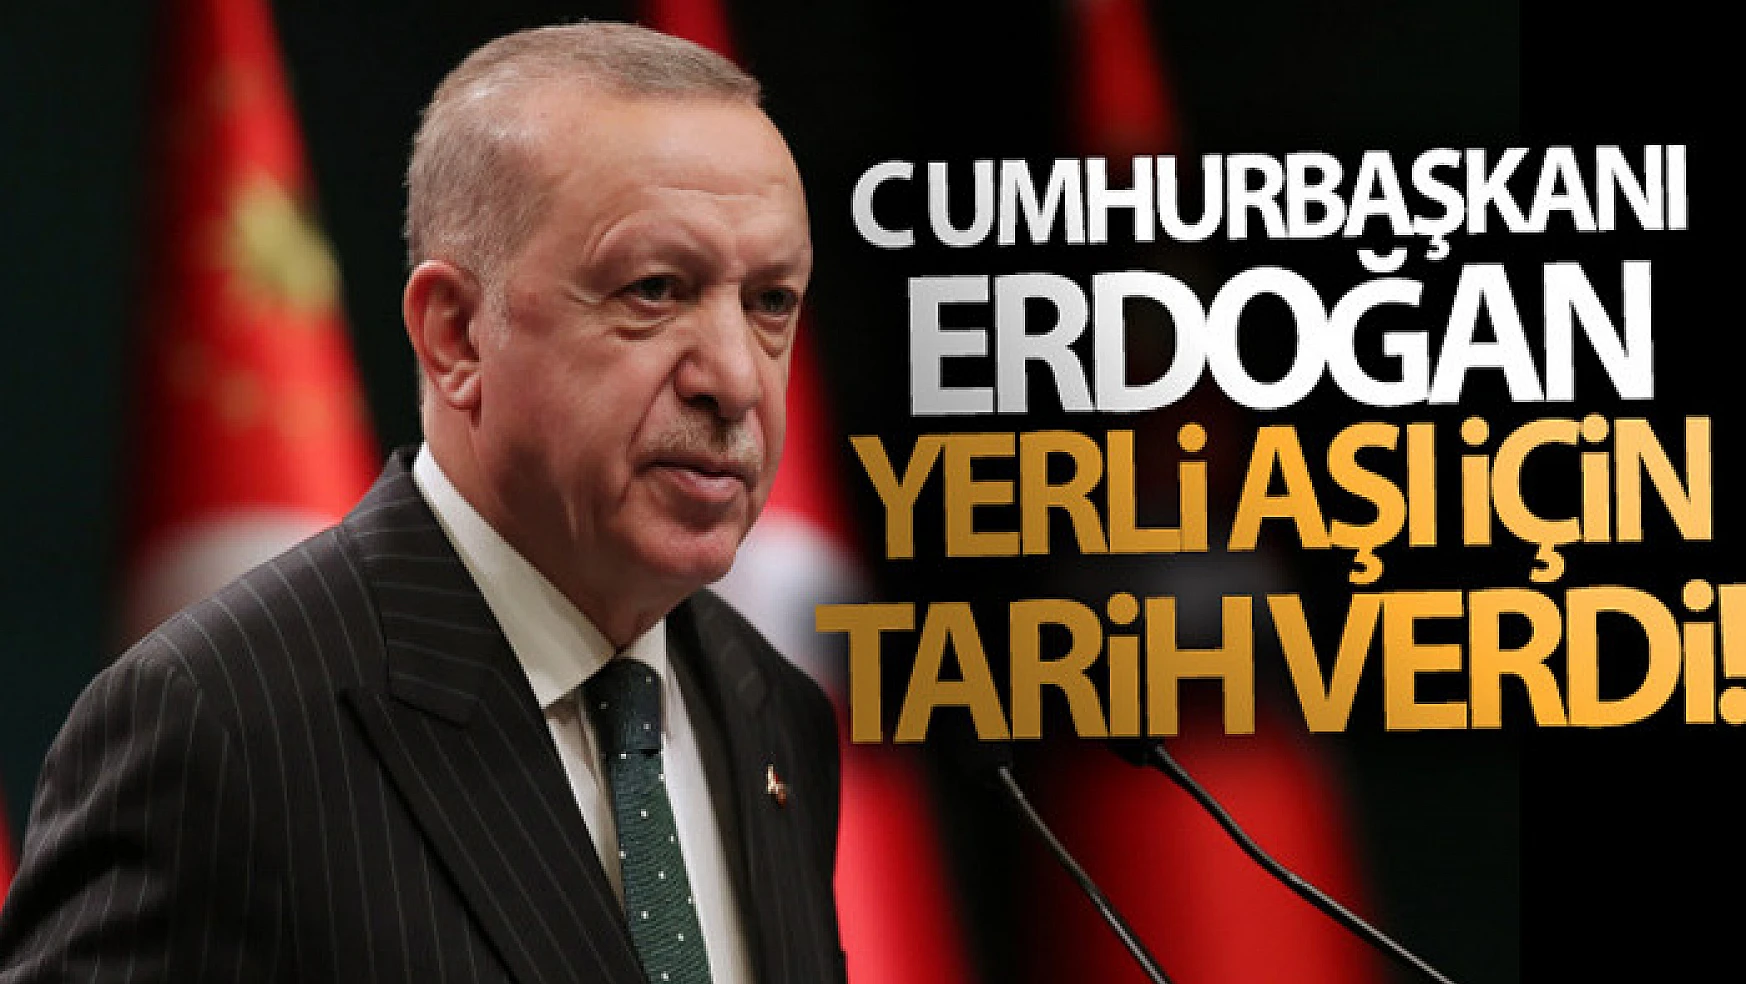 Cumhurbaşkanı Erdoğan yerli aşı için tarih verdi!